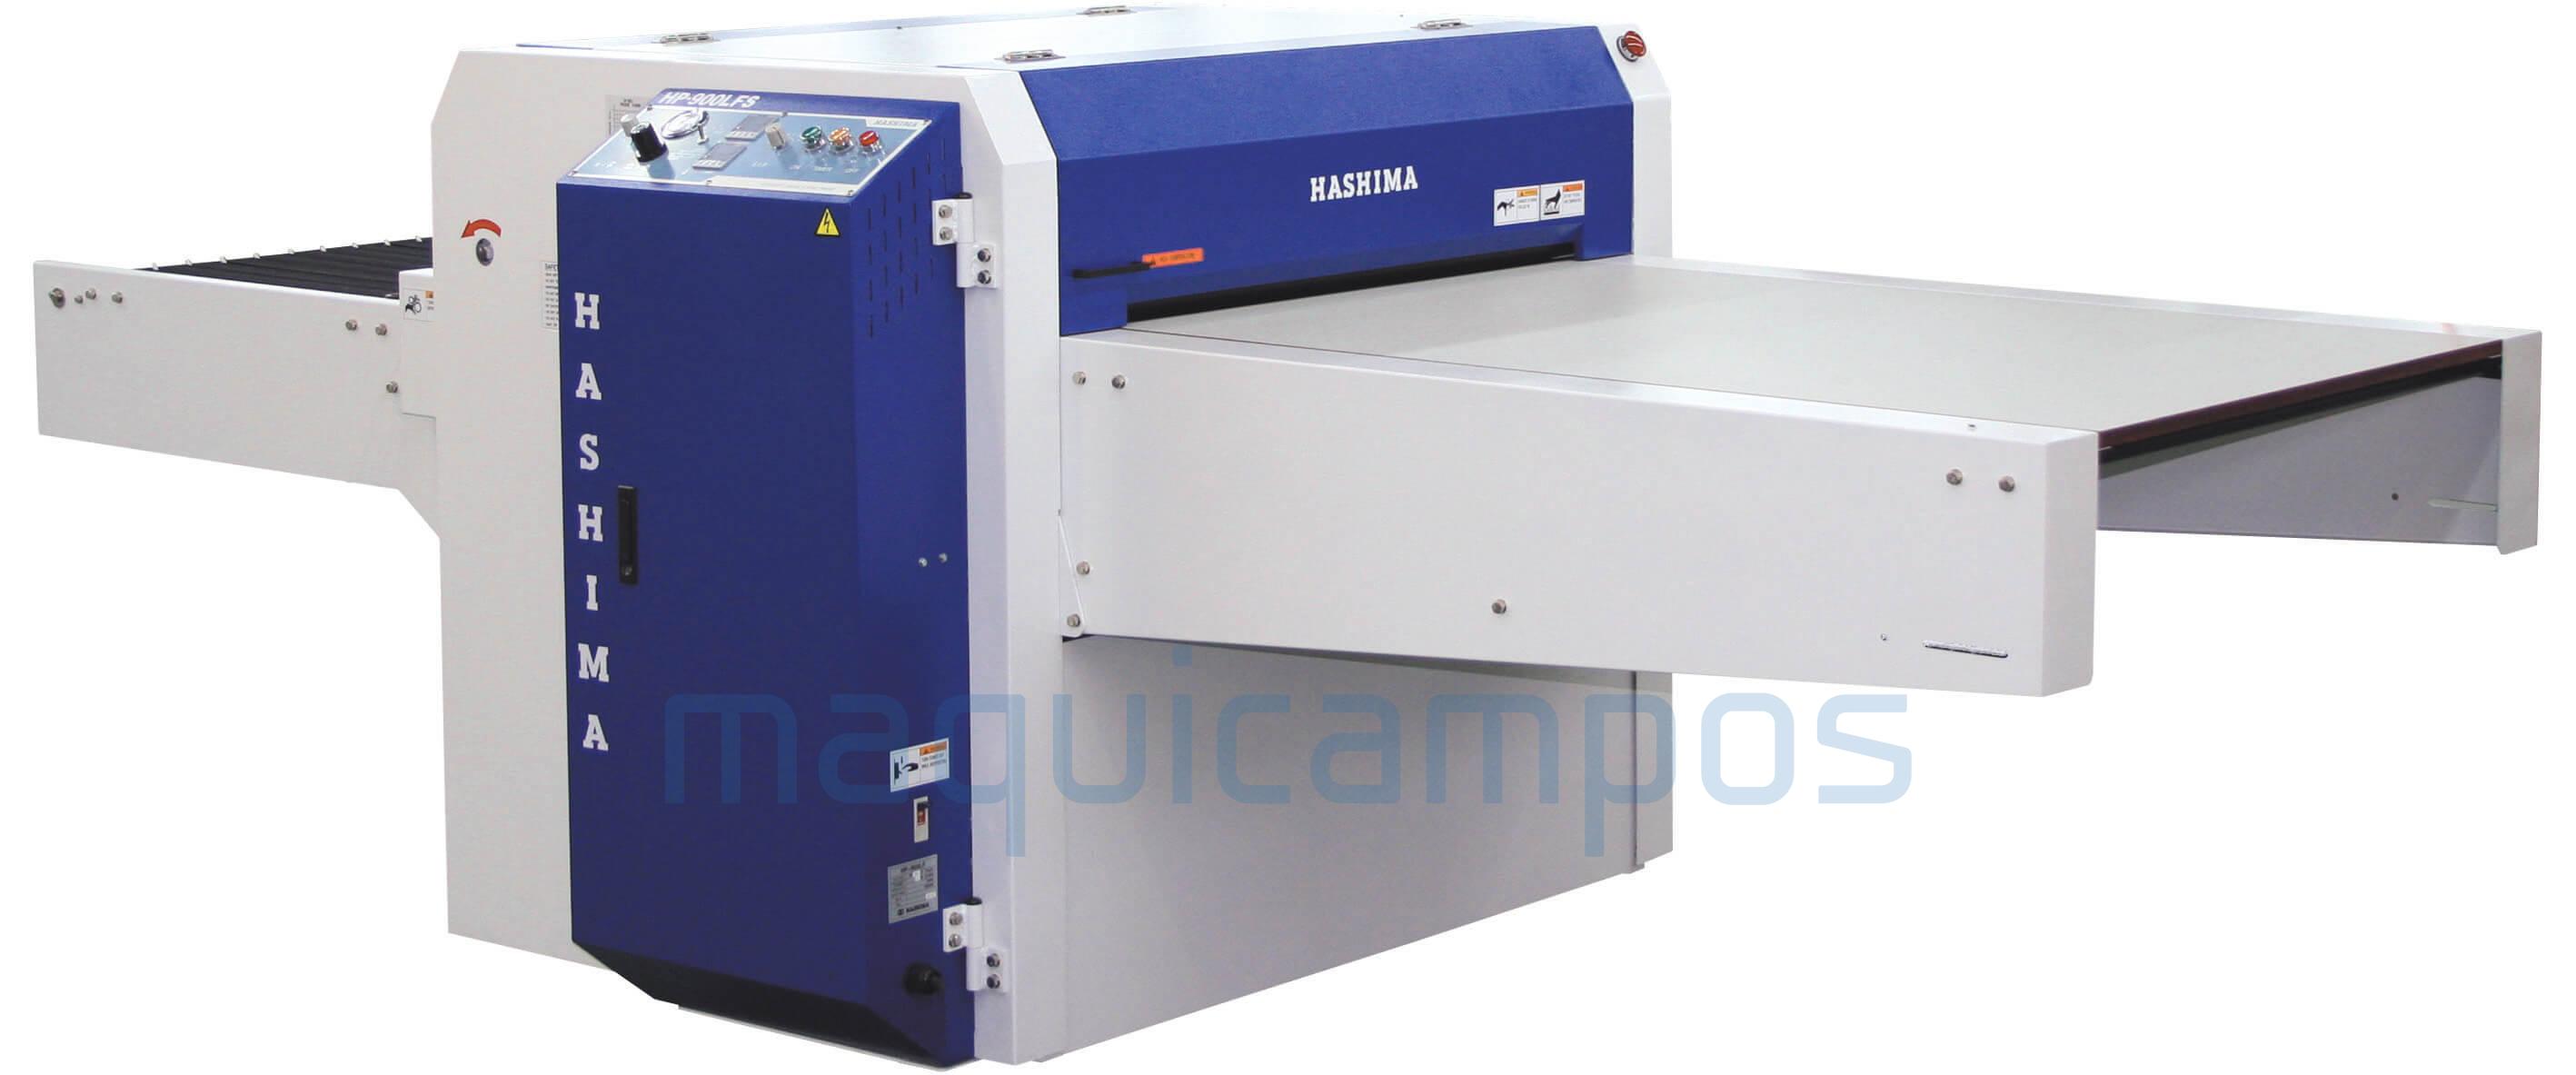 Hashima HP-600LFS Press Fusing Machine